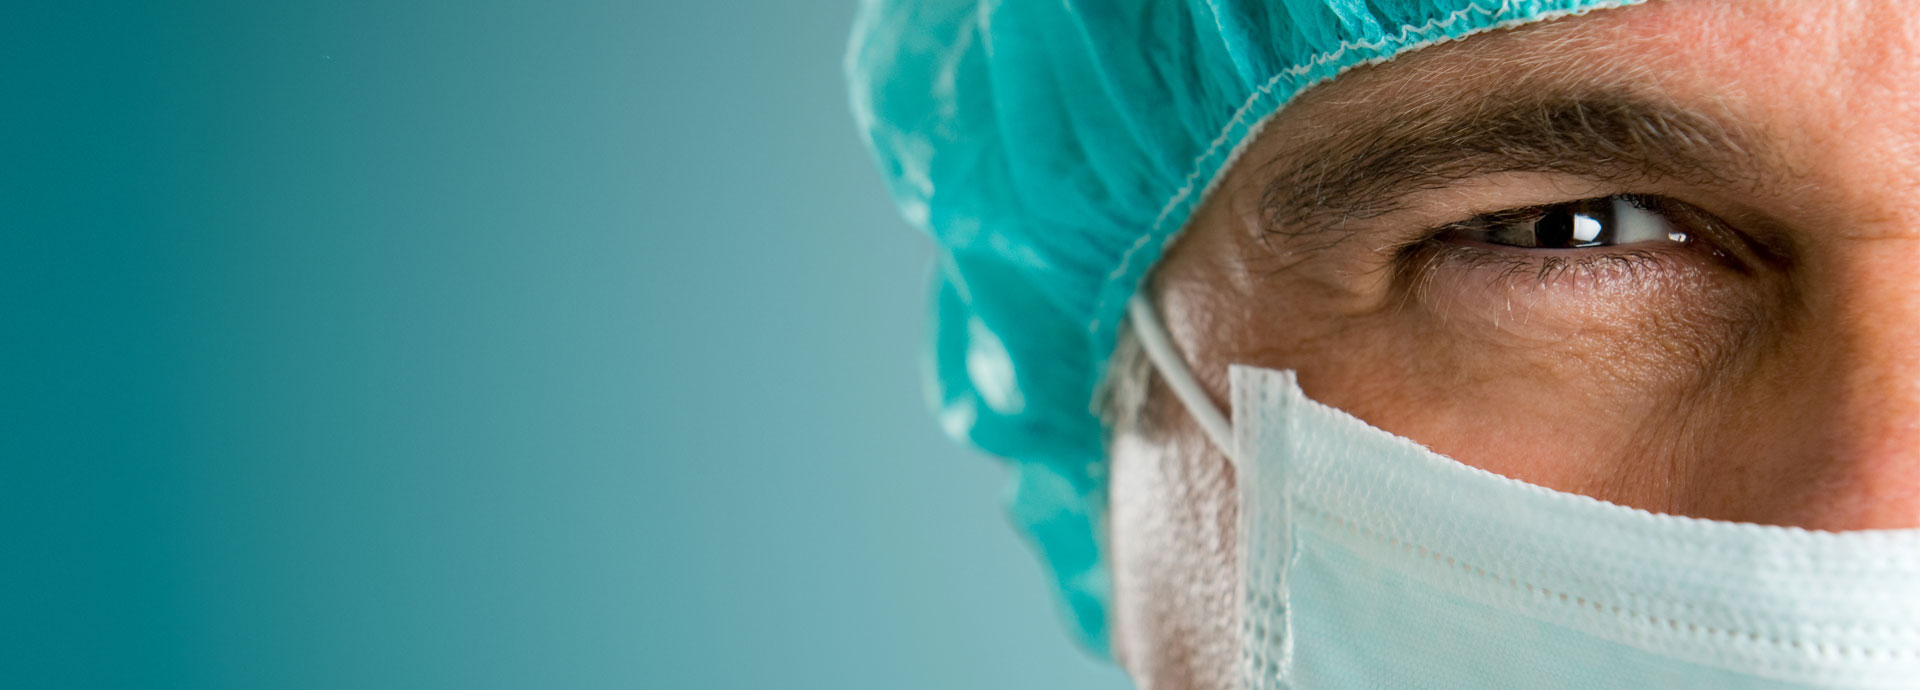 Θωμάς Ράπης | Γναθοπροσωπικός Χειρουργός Χειρουργός Κεφαλής & Τραχήλου